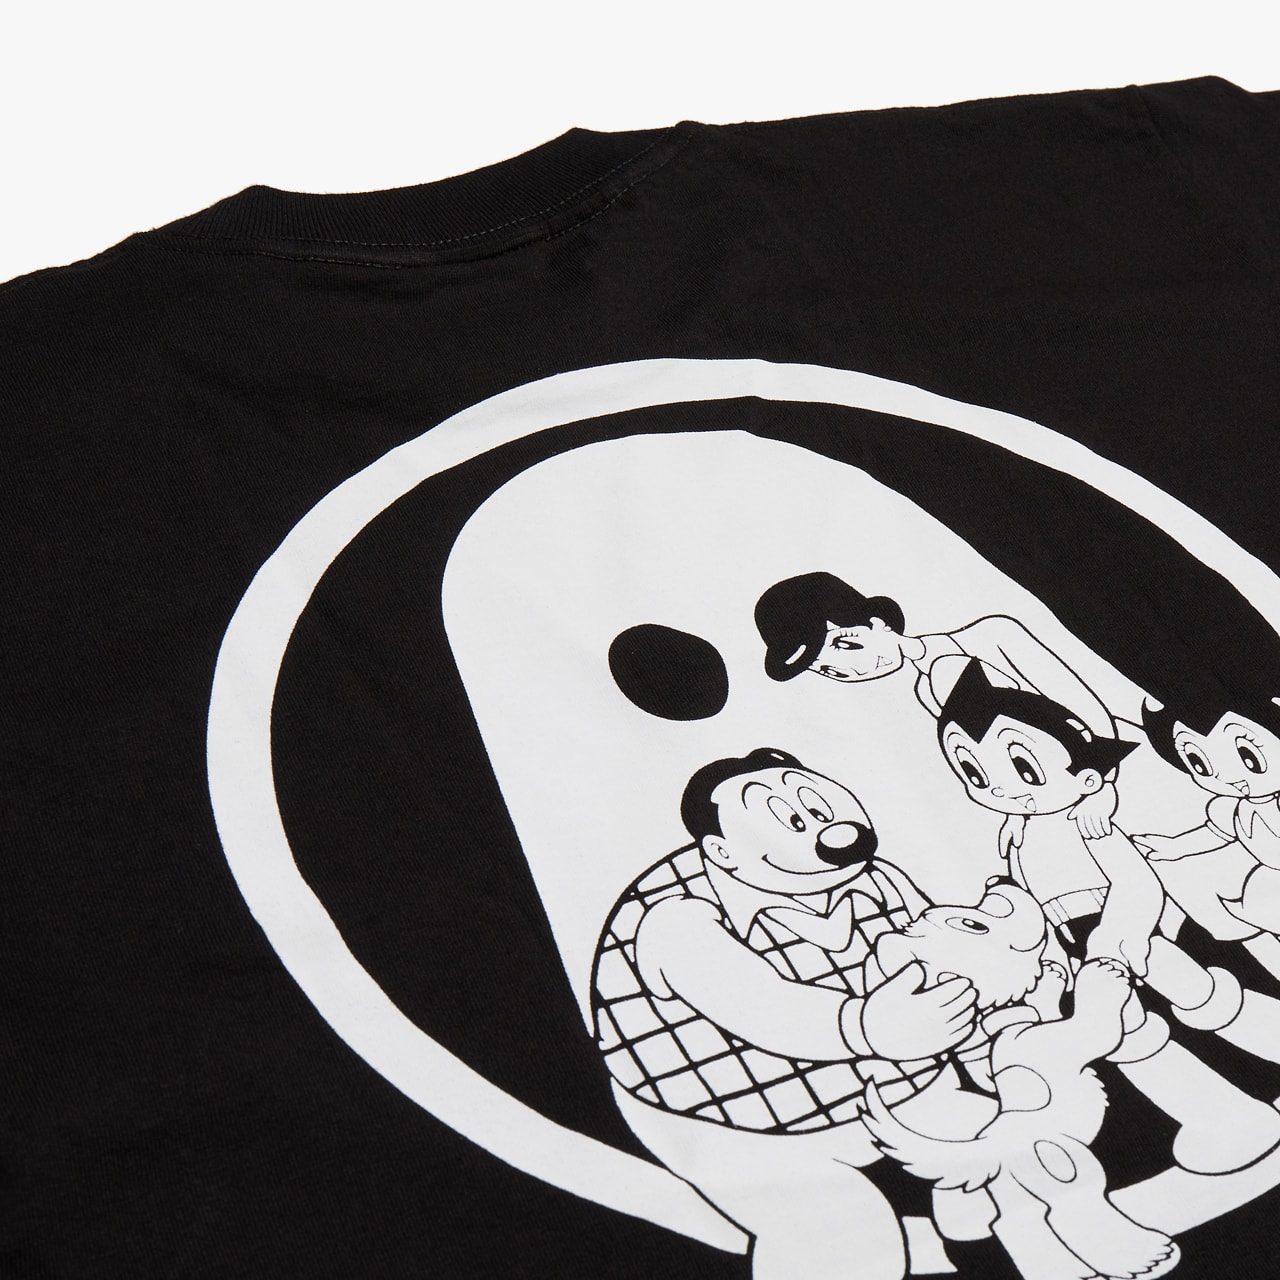 音楽レーベル Ghostly International が『鉄腕アトム』とのコラボマーチャンダイズを発表 'Astro Boy' x Ghostly International Collaboration osamu tezuka collection eric hu nike sportswear ssense tee shirt tote bag release date buy